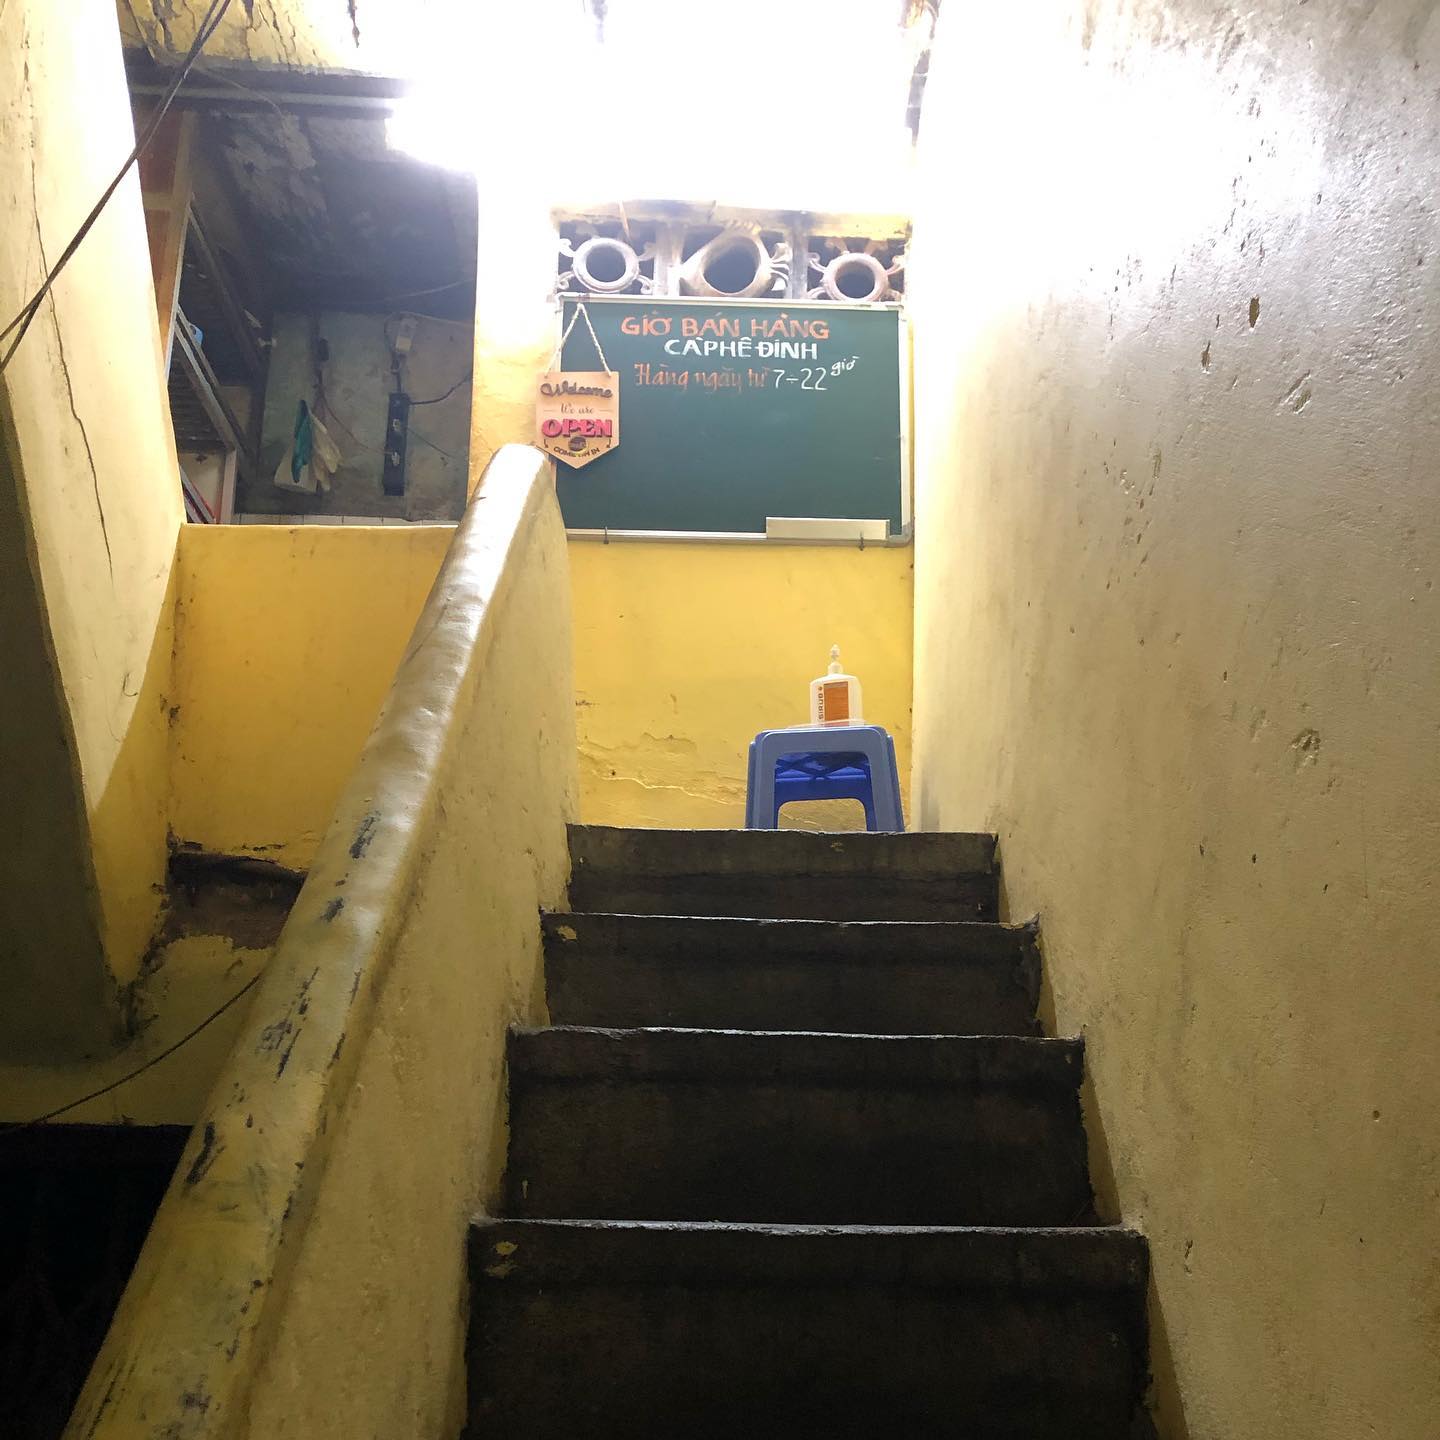 Những bậc cầu thang cũ dẫn lên quán. Ảnh: izou0301.